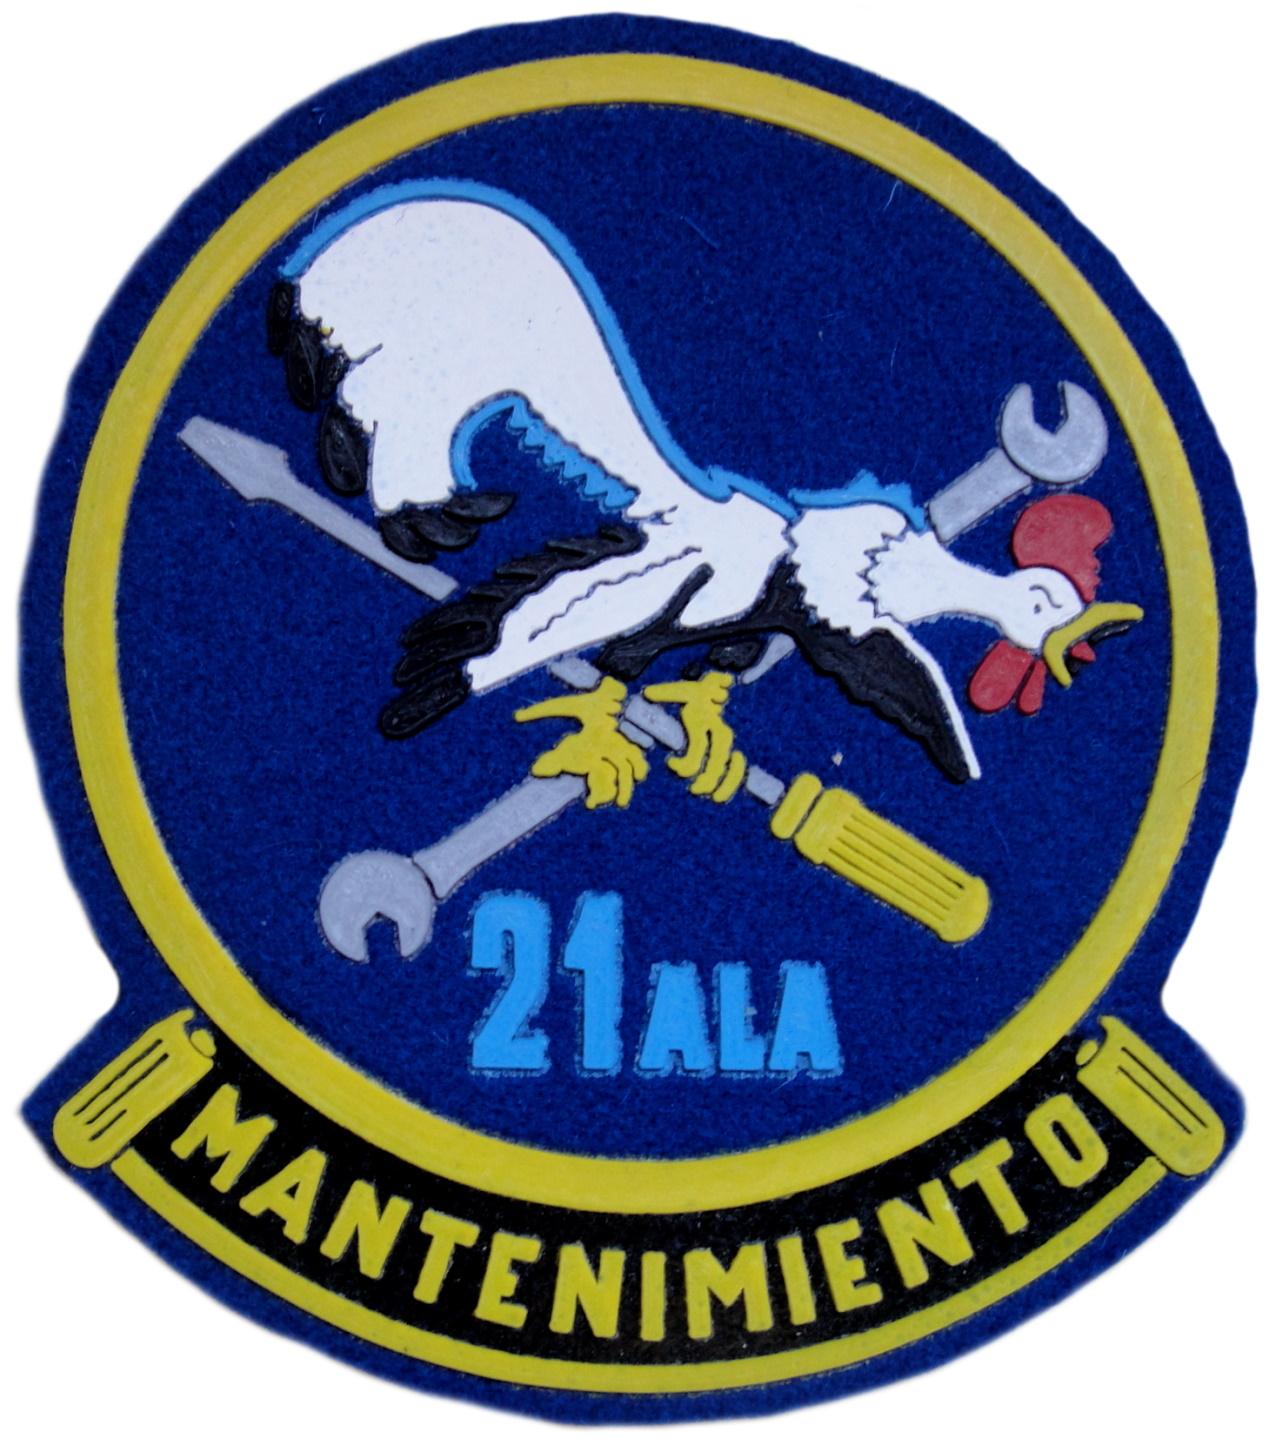 Ejército del aire ala 21 mantenimiento parche insignia emblema distintivo filo amarillo